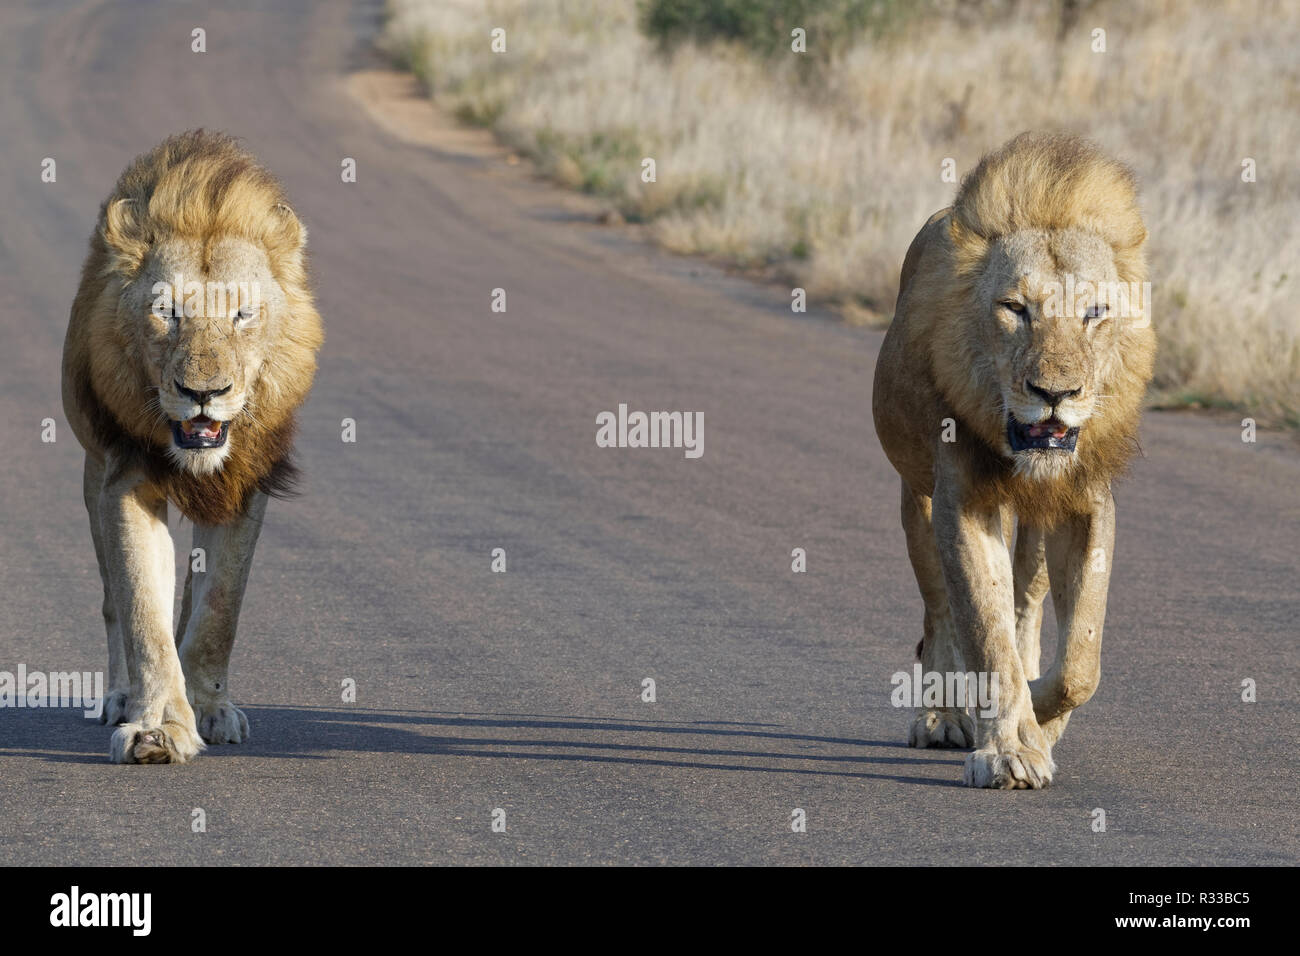 Les lions d'Afrique (Panthera leo), deux hommes adultes, l'un d'eux à moitié aveugle, marchant côte à côte sur une route goudronnée, Kruger National Park, Afrique du Sud Banque D'Images